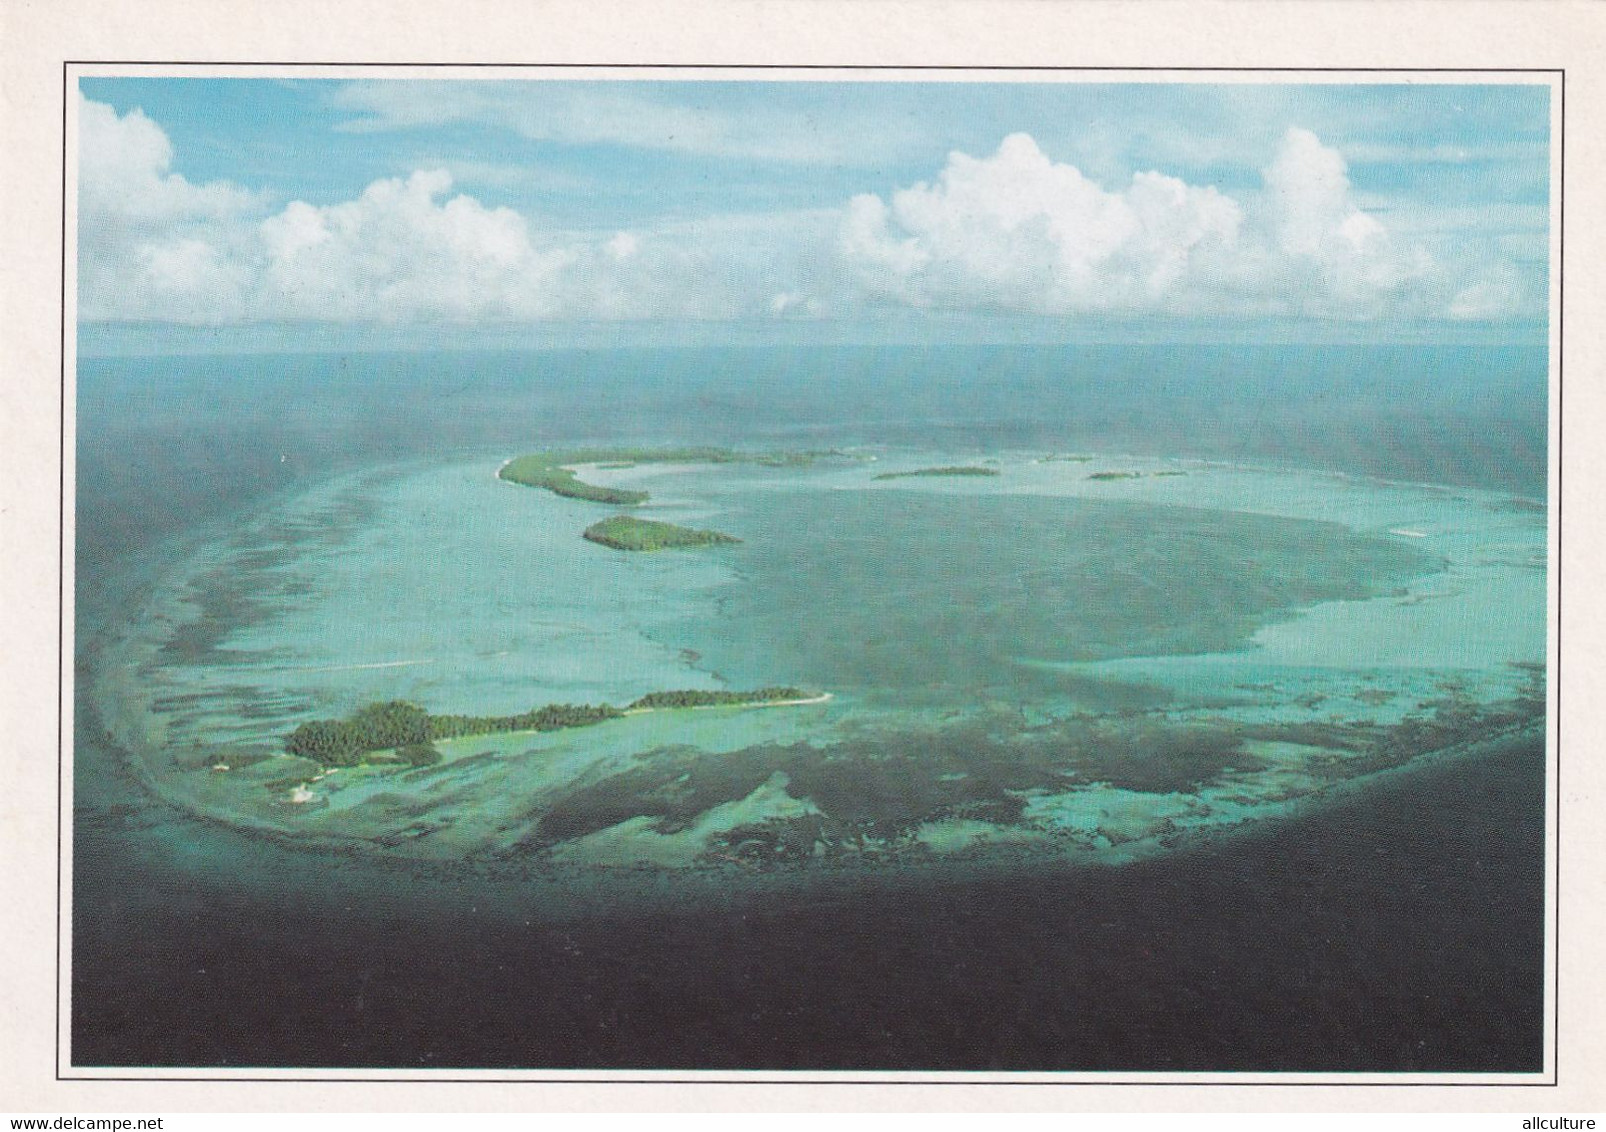 A4424- Couronne De L'atoll De Daros Vu D'avion, Crown Of Daros Atoll Seen From An Airplane Seychelles - Seychelles